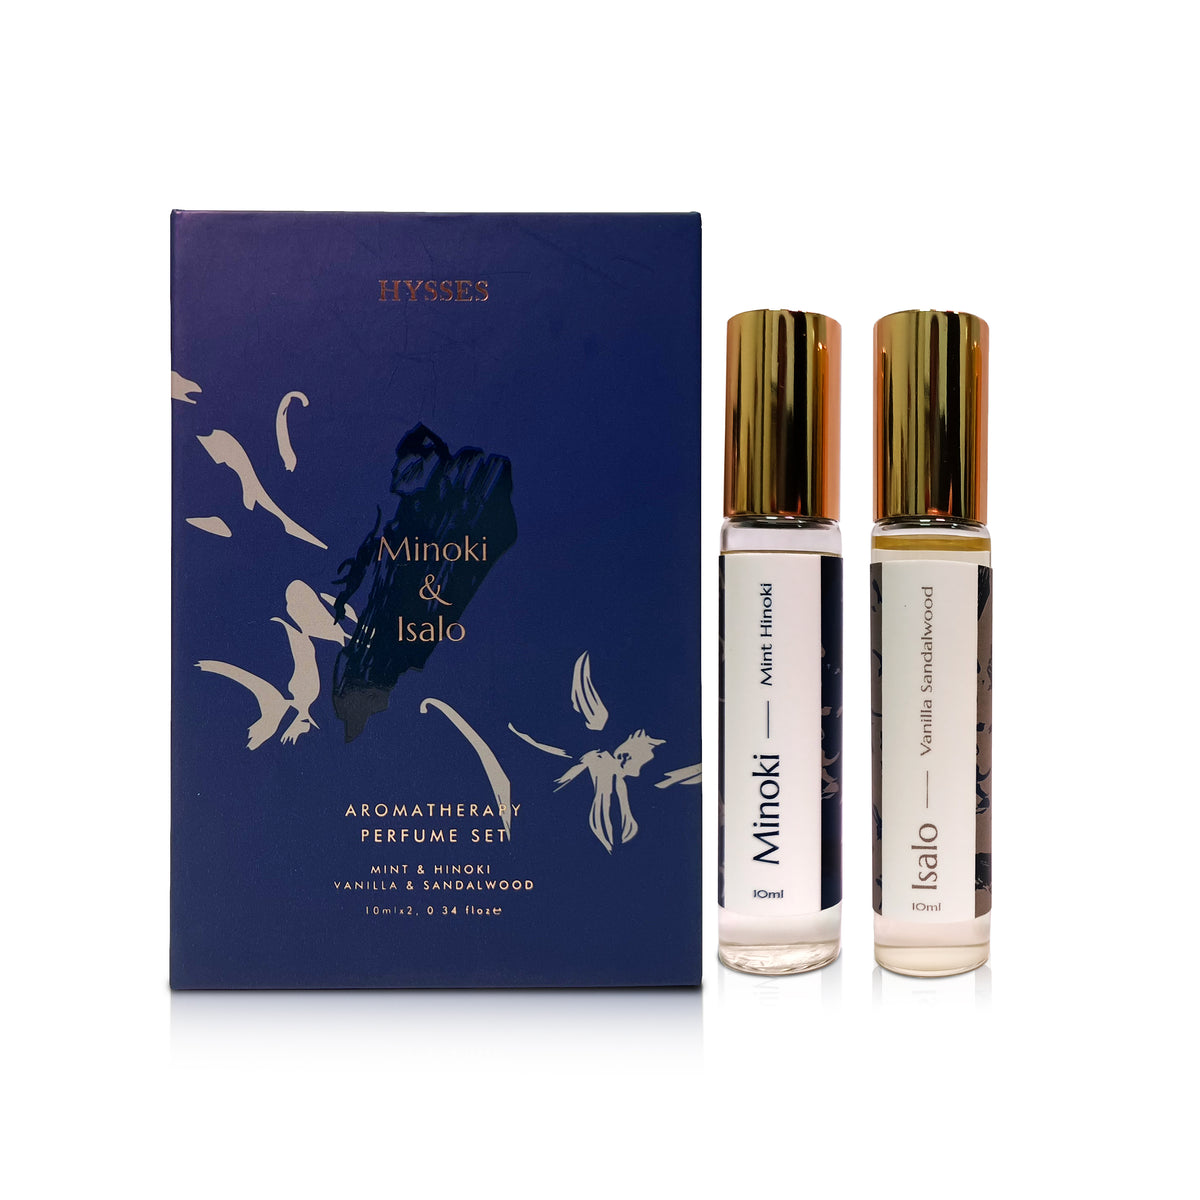 Aroma Perfume Set of 2 (Minoki, Isalo)